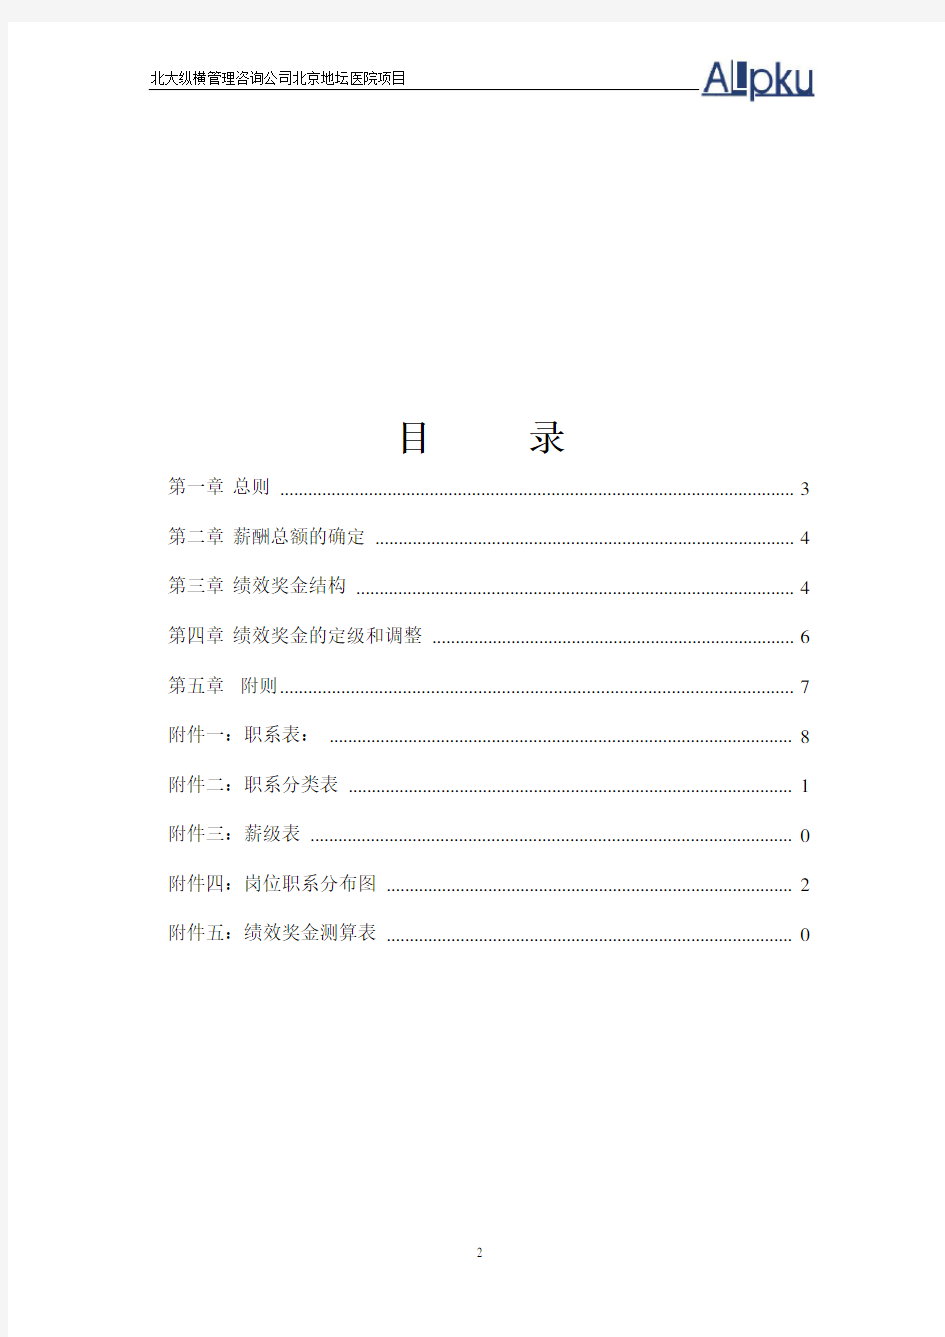 北京地坛医院薪酬管理体系设计方案(提交版)